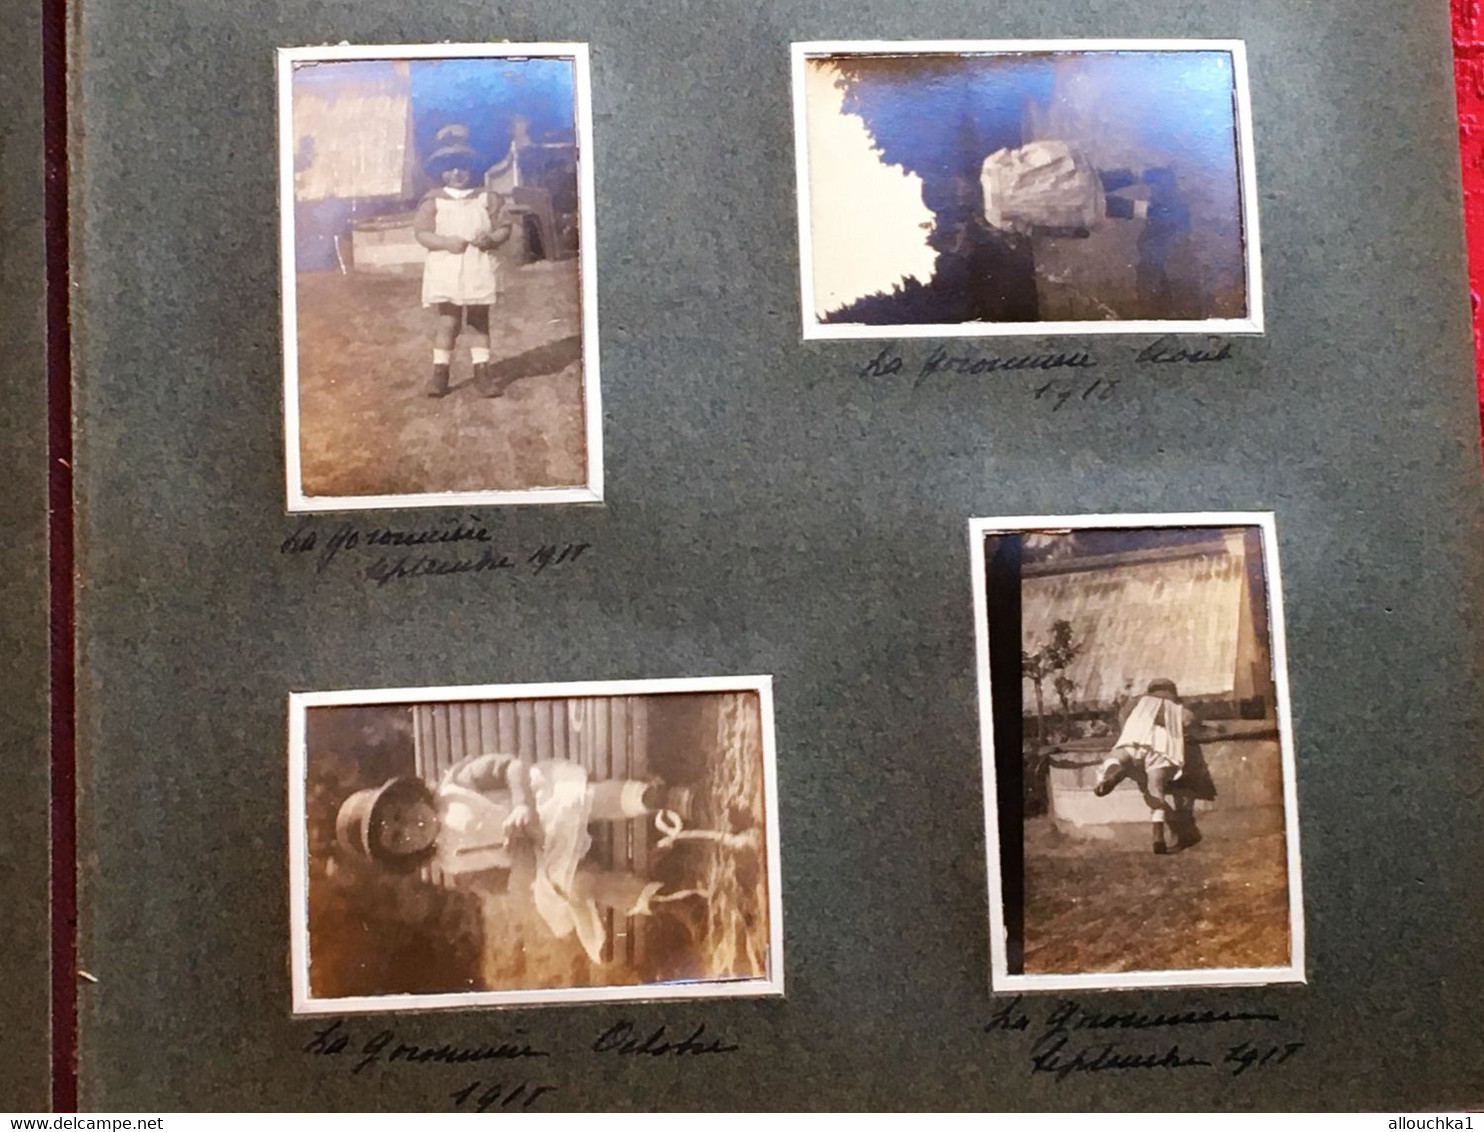 1918/25 Cavalaire-Hyères-Lavandou-Pardigon-Croix-Valmer-Album 87 Photo Original Photographie-Militaires-Bourgeois-Sépia